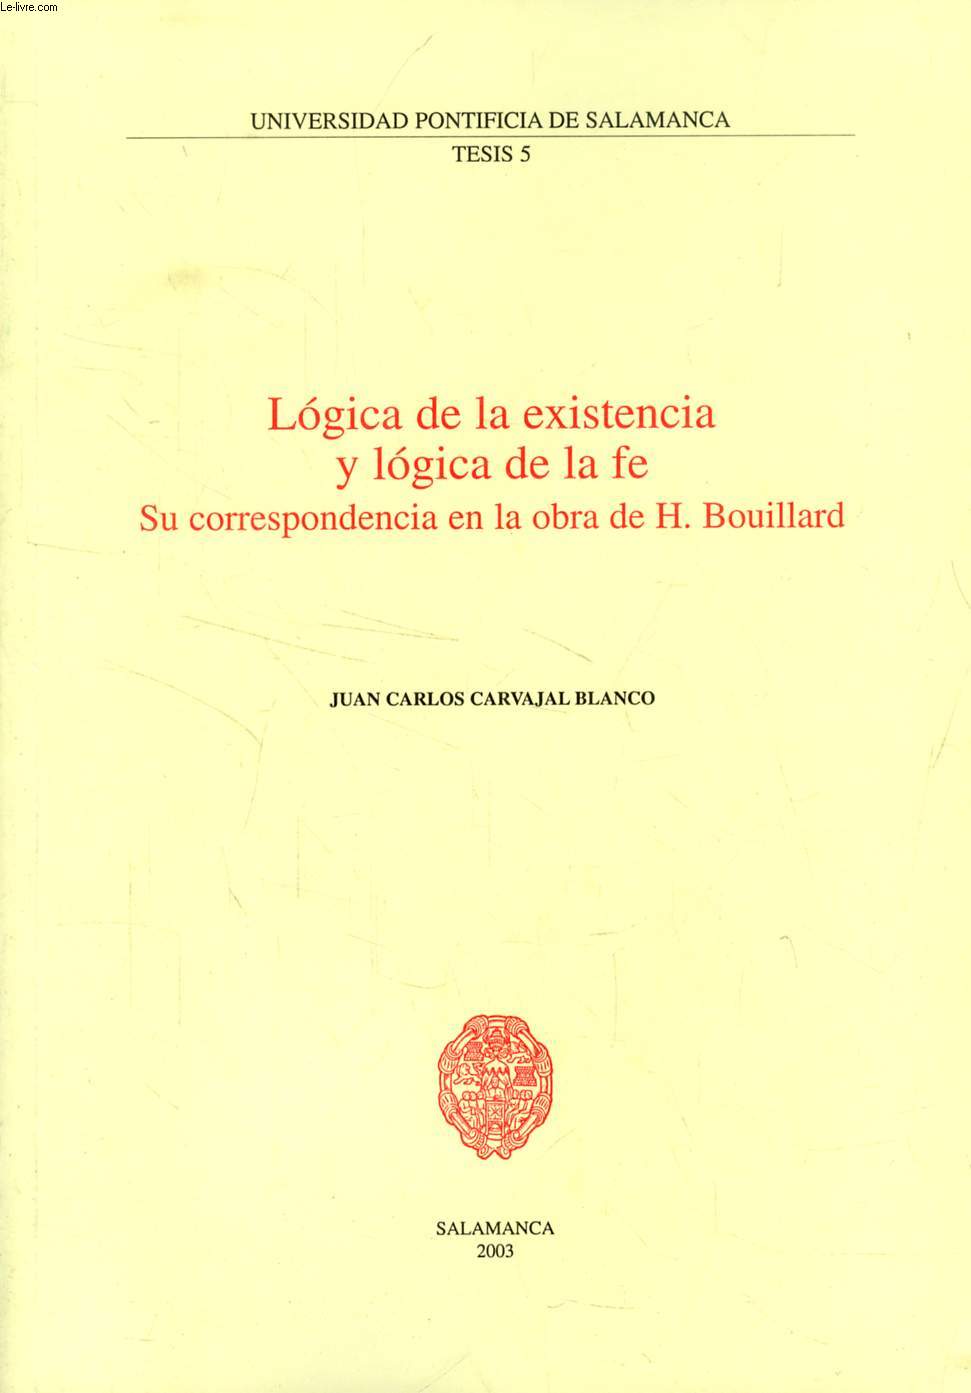 LOGICA DE LA EXISTENCIA Y LOGICA DE LA FE, SU CORRESPONDENCIA EN LA OBRA DE H. BOUILLARD (EXTRACTO DE TESIS)